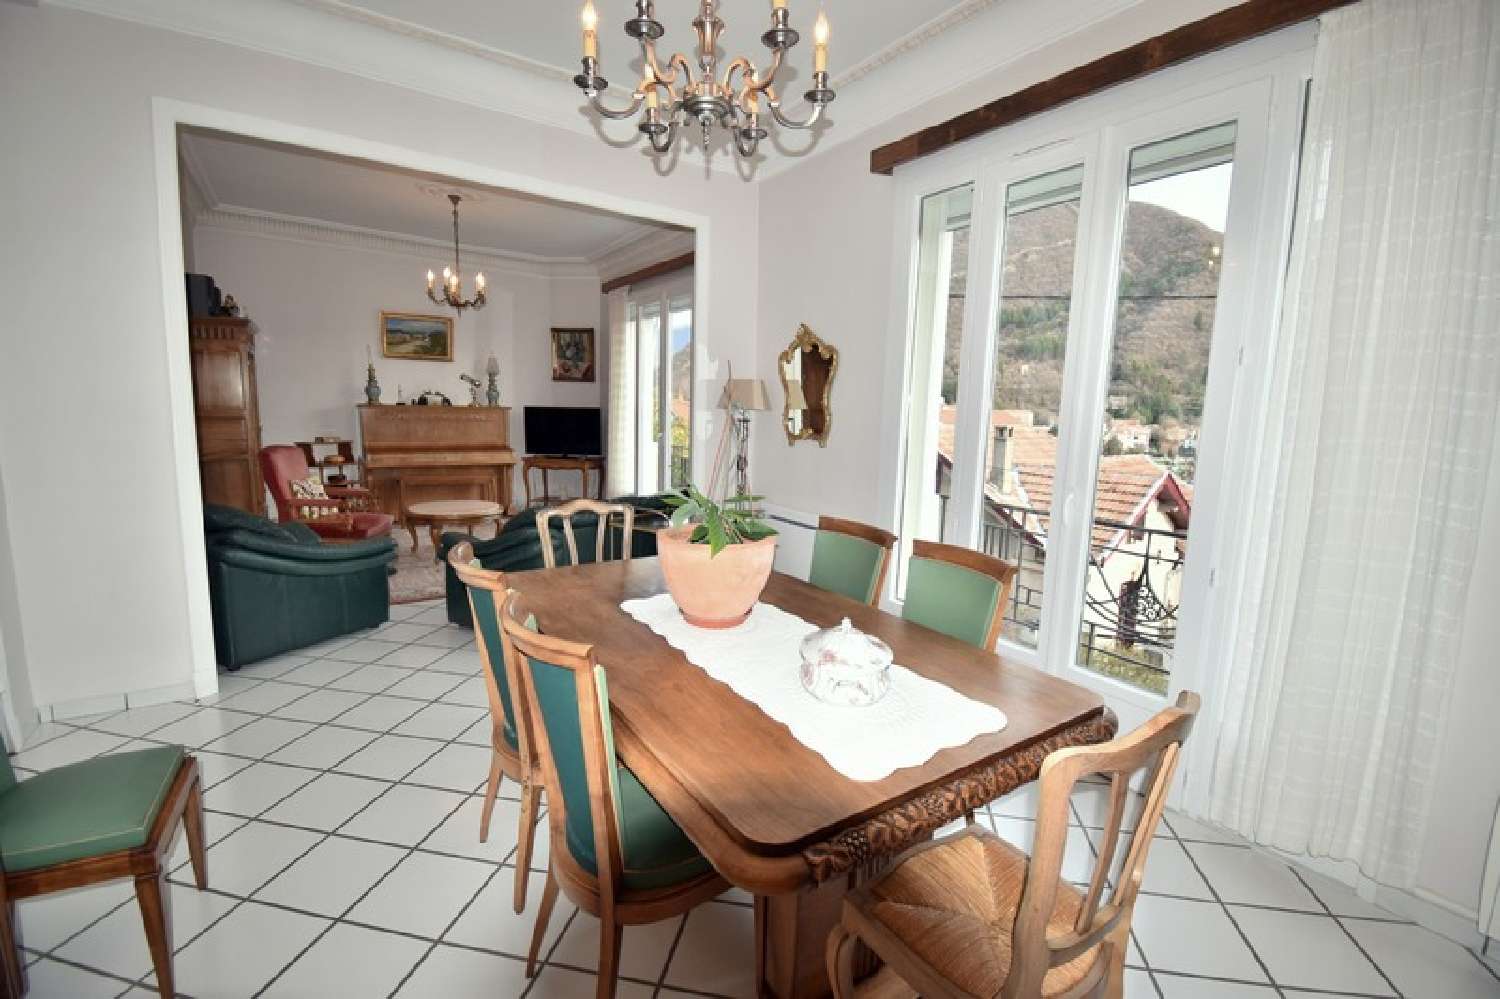  à vendre maison bourgeoise Digne-Les-Bains Alpes-de-Haute-Provence 8